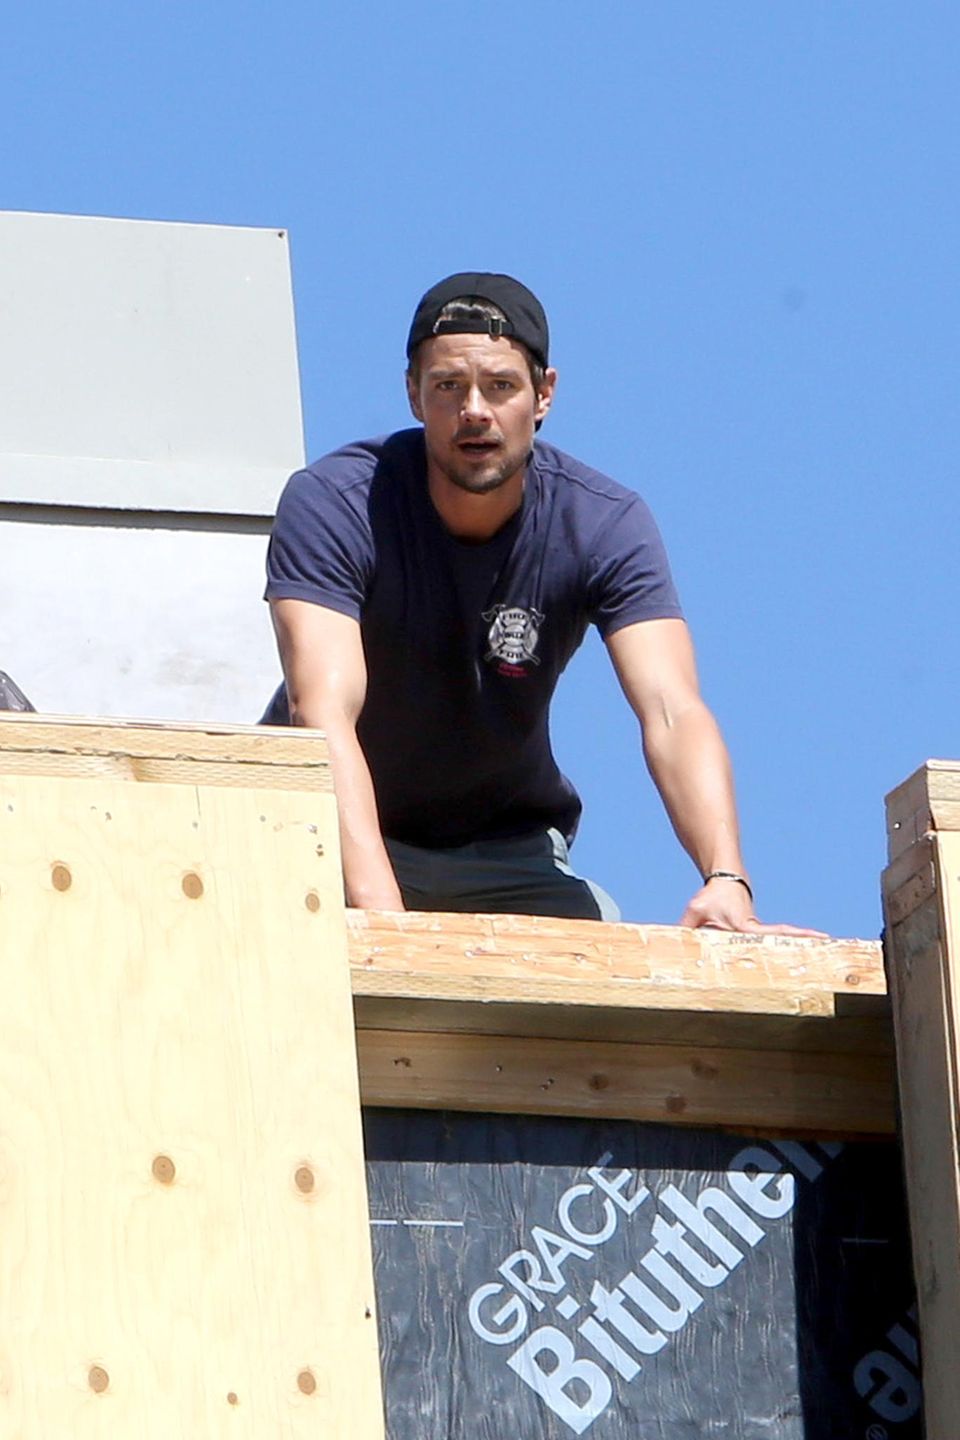 Der Bauherr inspiziert sein Reich: Josh Duhamel klettert auf eine Leiter, um sich den vollen Überblick zu verschaffen.